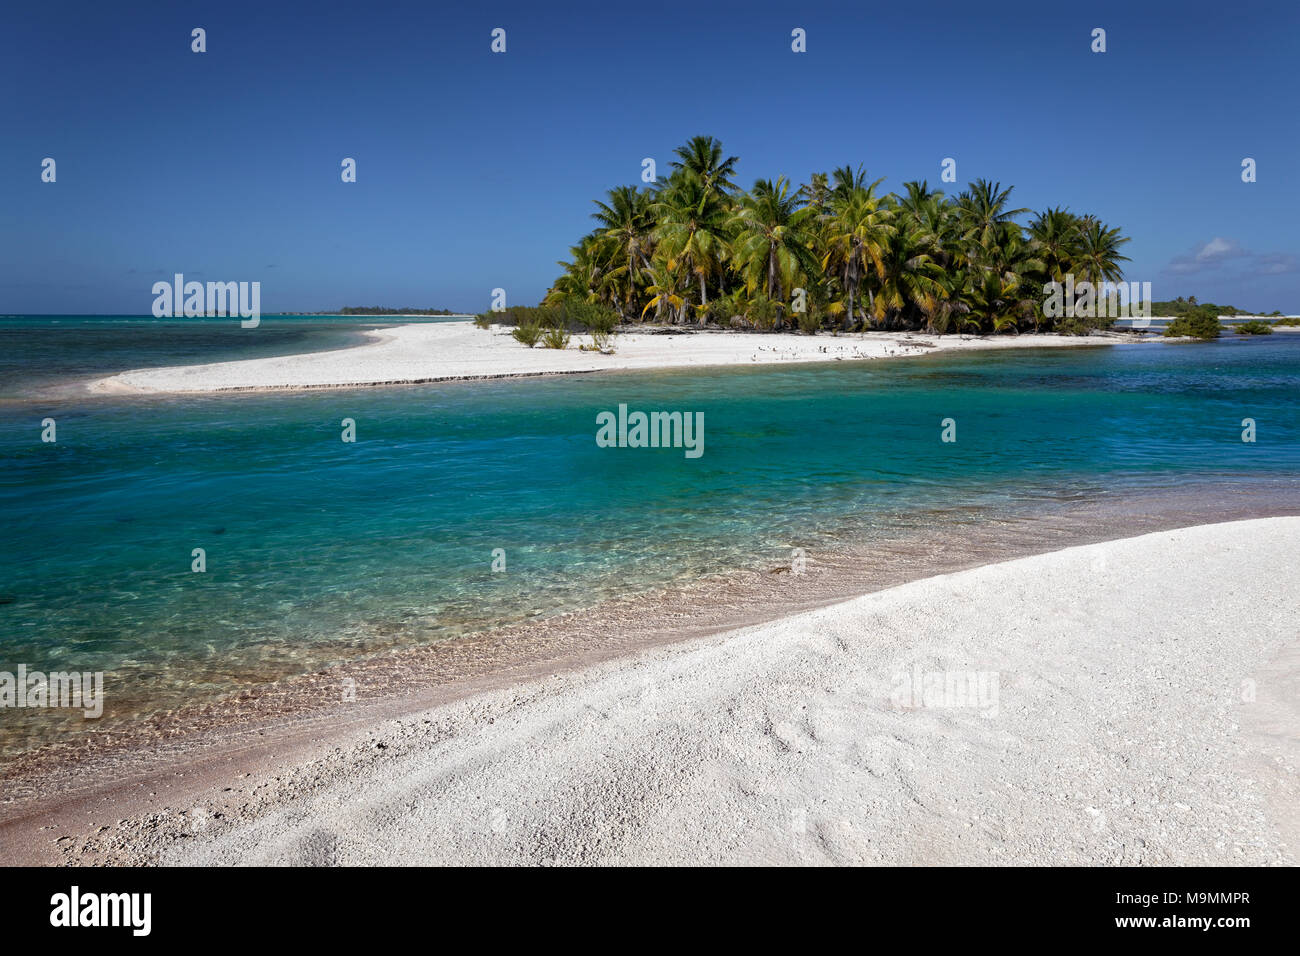 Isola solitaria, spiaggia con palme, Tikehau Atoll, Arcipelago Tuamotu, isole della Società, isole Windward, Polinesia Francese Foto Stock